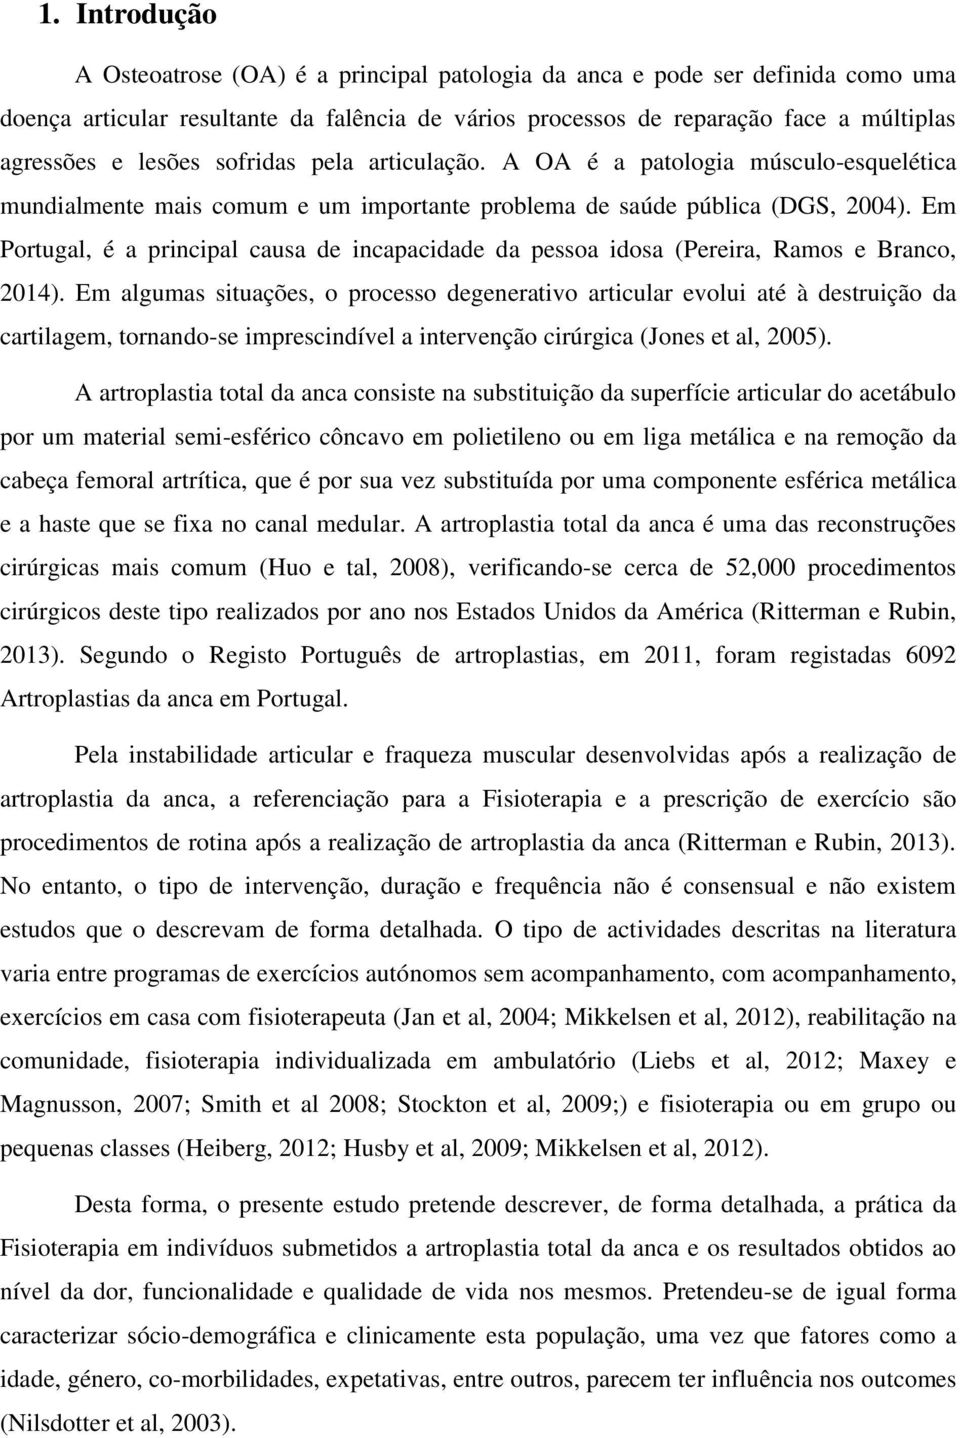 Em Portugal, é a principal causa de incapacidade da pessoa idosa (Pereira, Ramos e Branco, 2014).